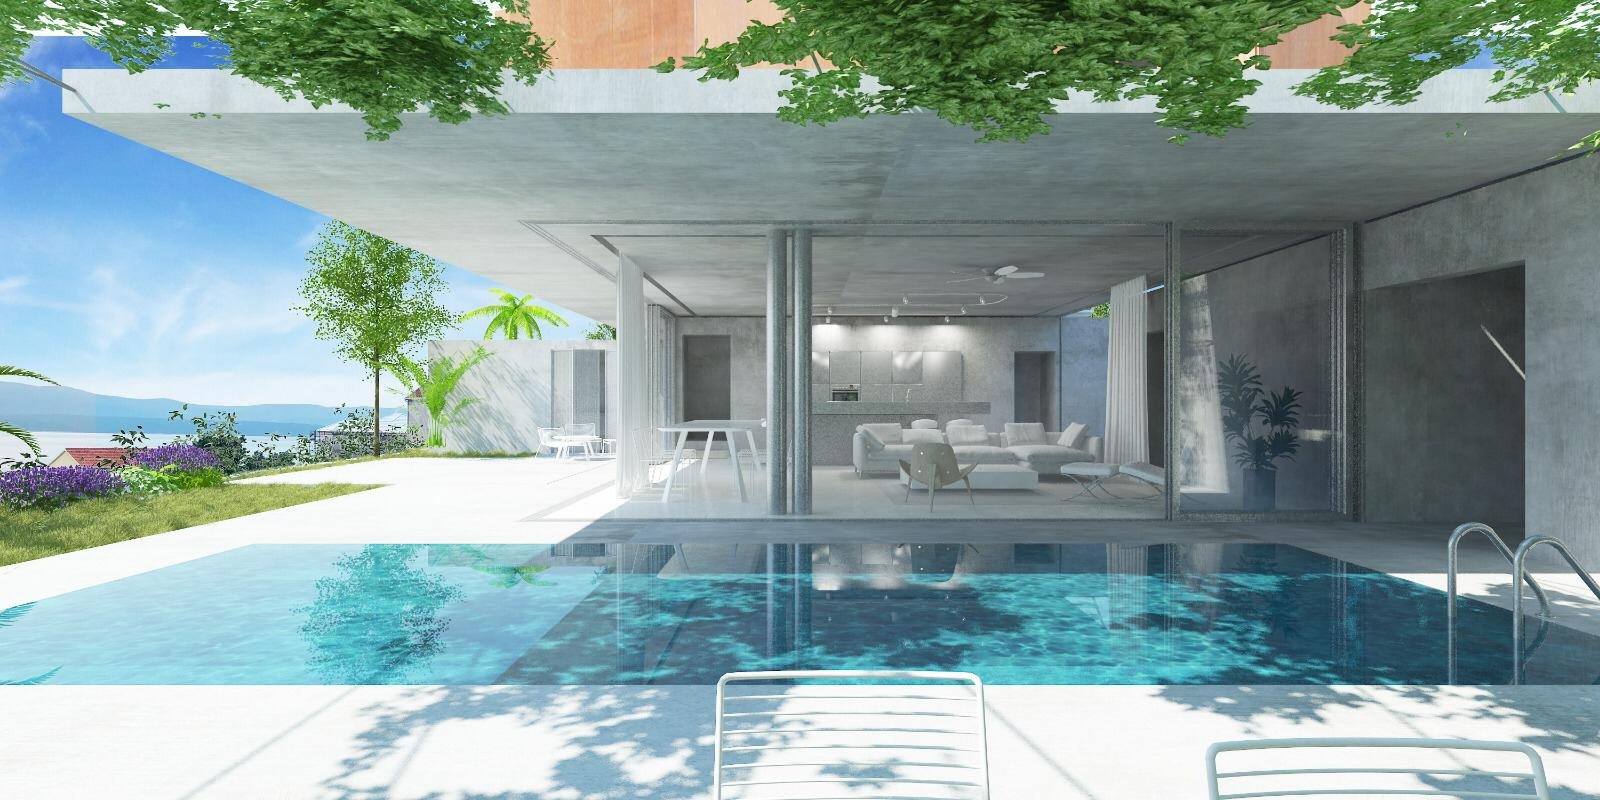 Schönes Ferienhaus mit Pool - Beispielbild für Ferienimmobilien in Kroatien von Dr. Koch Traumrealitäten